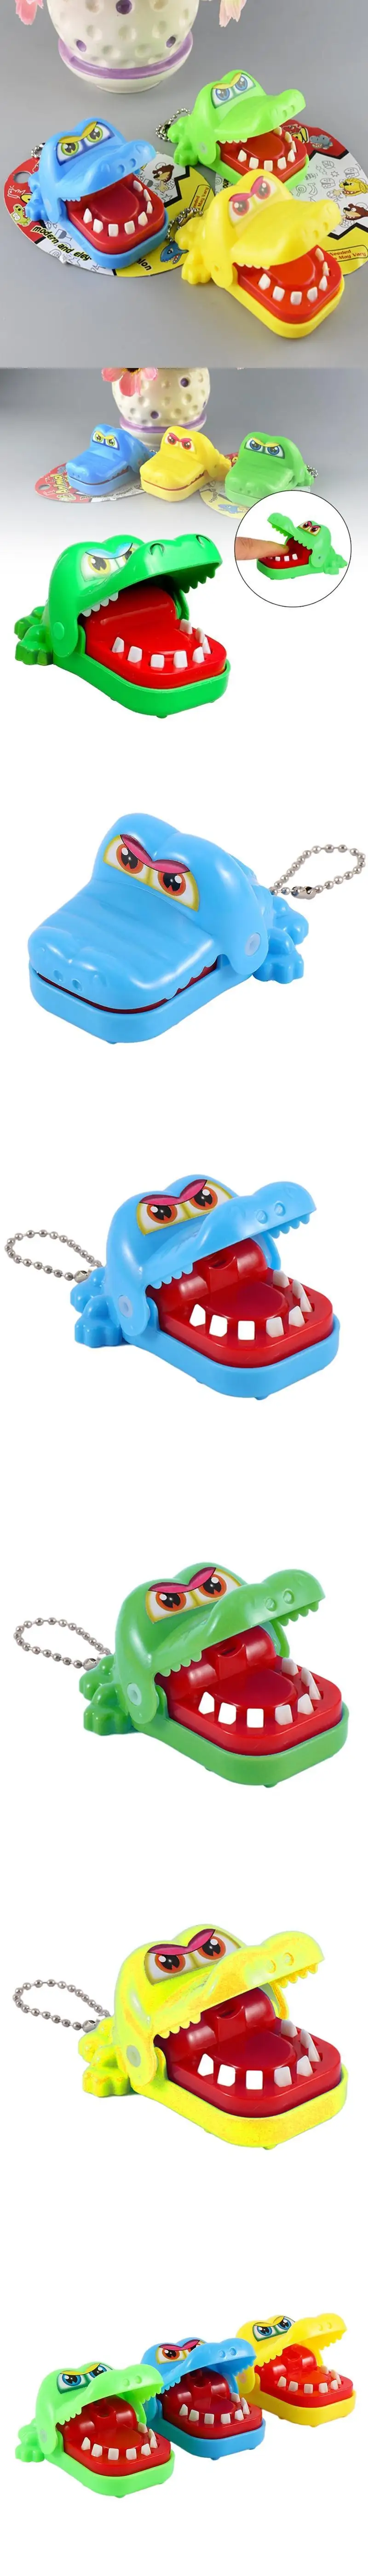 Крокодил Рот стоматолога укус палец игра Смешные приколы игрушка для детей играть забавно